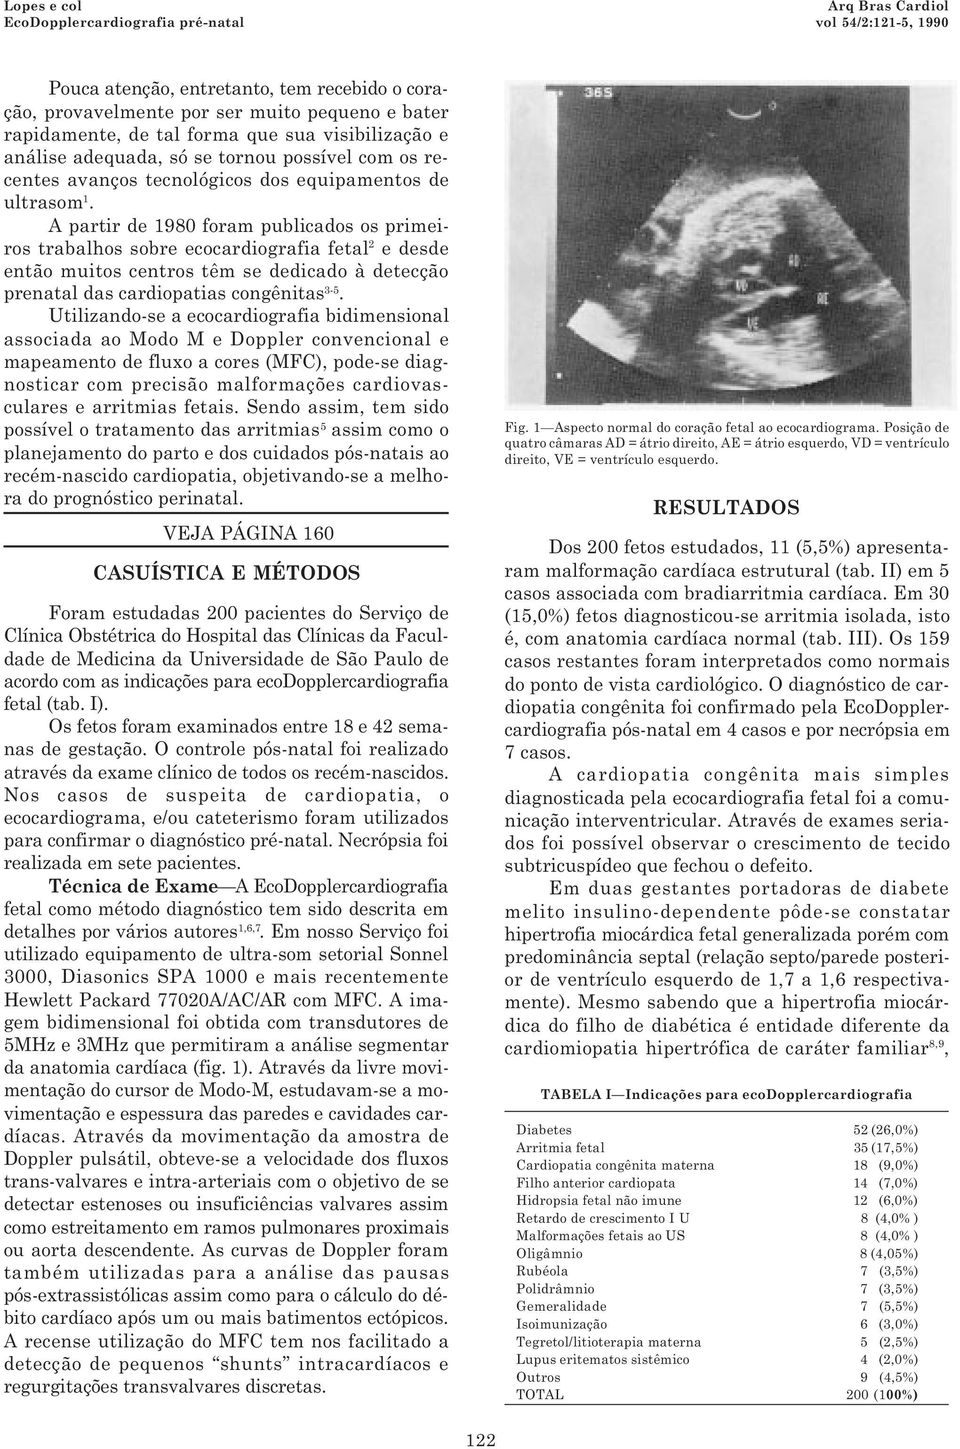 A partir de 1980 foram publicados os primeiros trabalhos sobre ecocardiografia fetal 2 e desde então muitos centros têm se dedicado à detecção prenatal das cardiopatias congênitas 3-5.